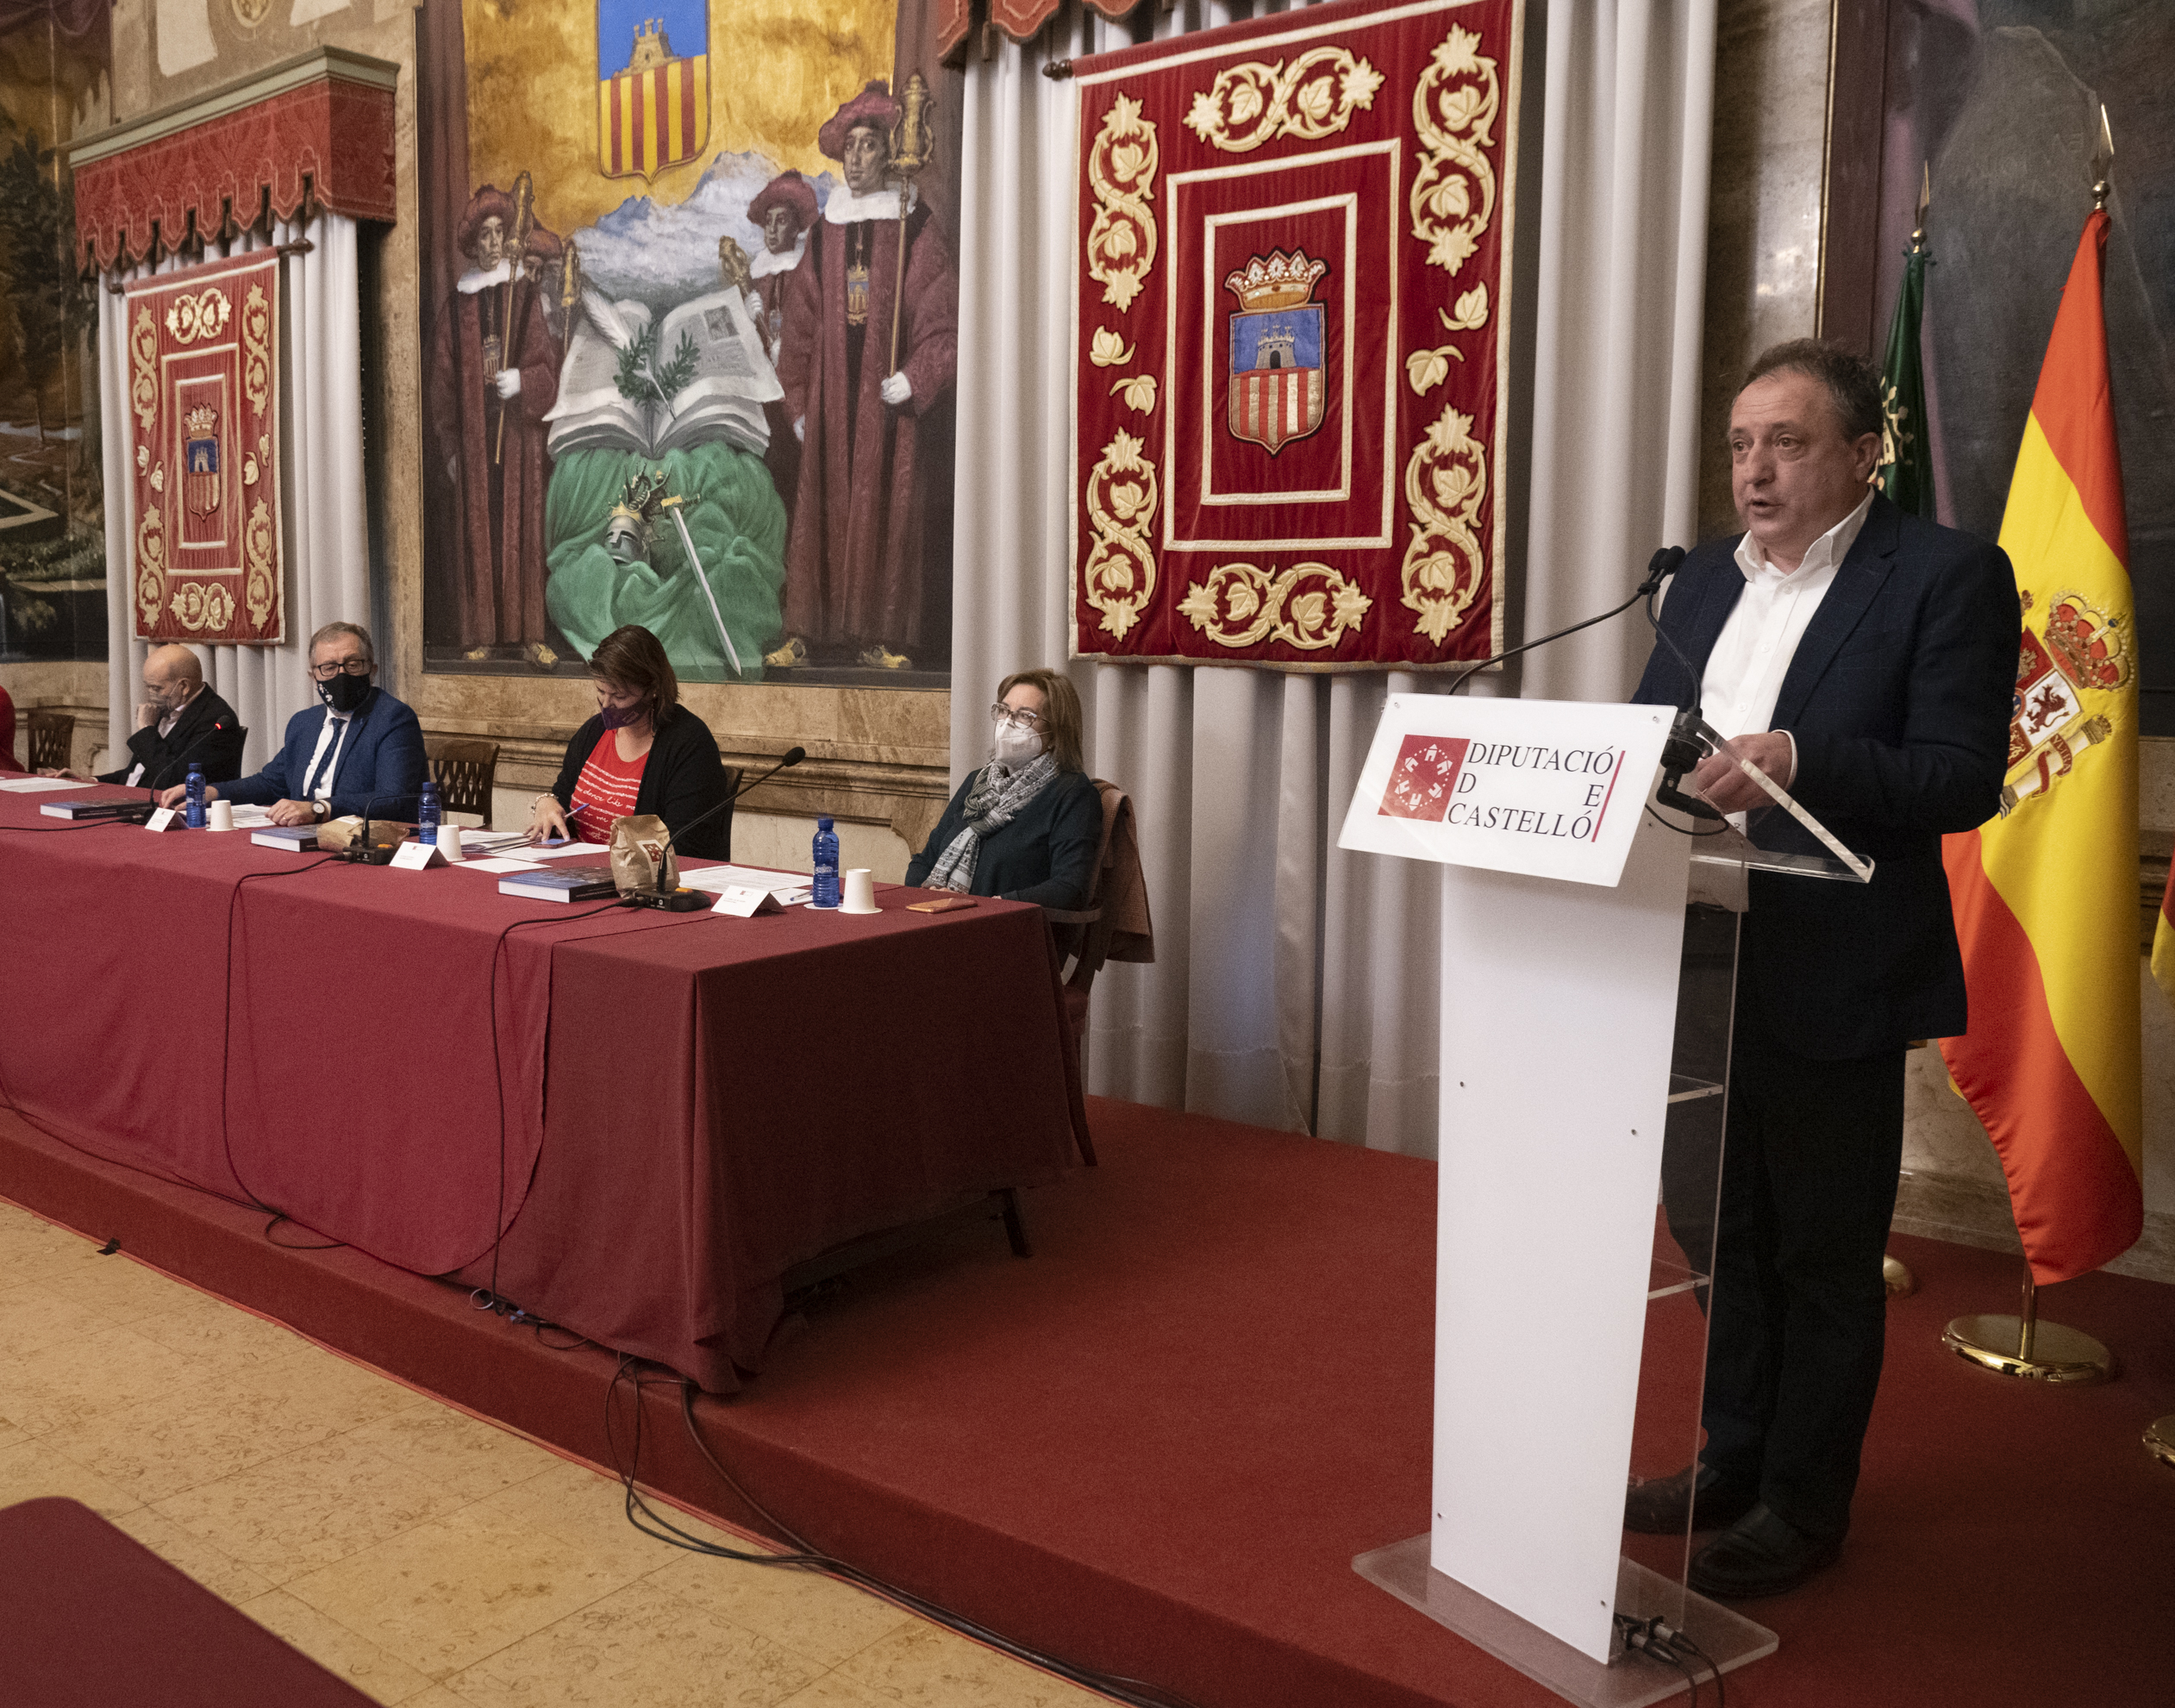 La Diputación de Castellón gana en agilidad administrativa al mejorar las cifras de ejecución presupuestaria respecto a ejercicios precedentes